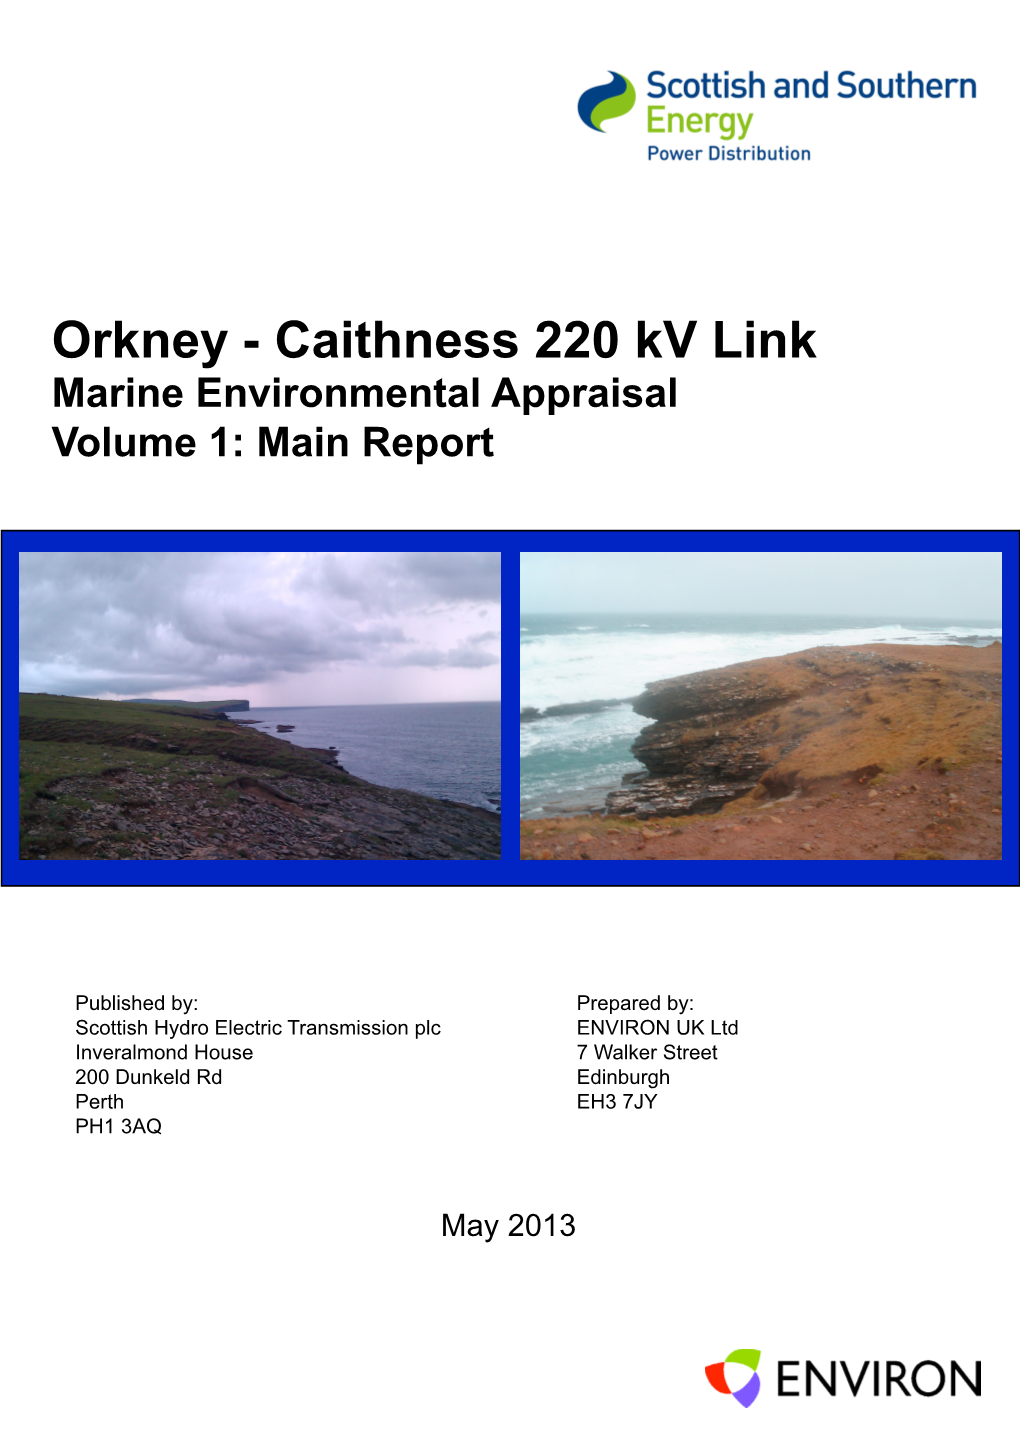 Orkney - Caithness 220 Kv Link Marine Environmental Appraisal Volume 1: Main Report